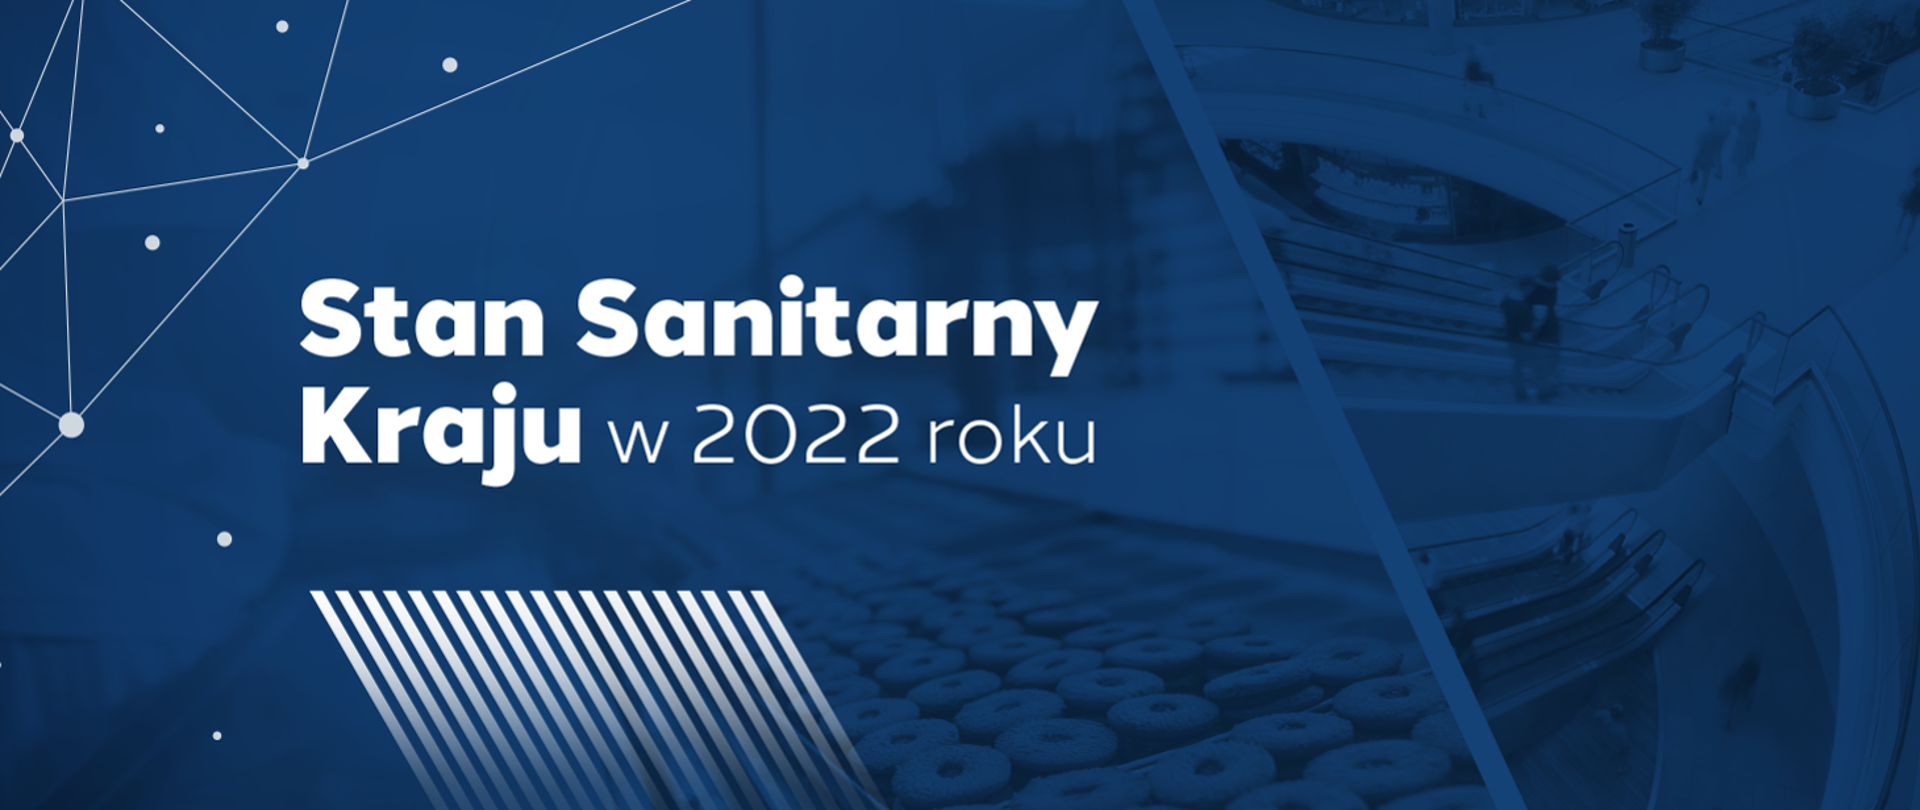 Stan Sanitarny Kraju w 2022 